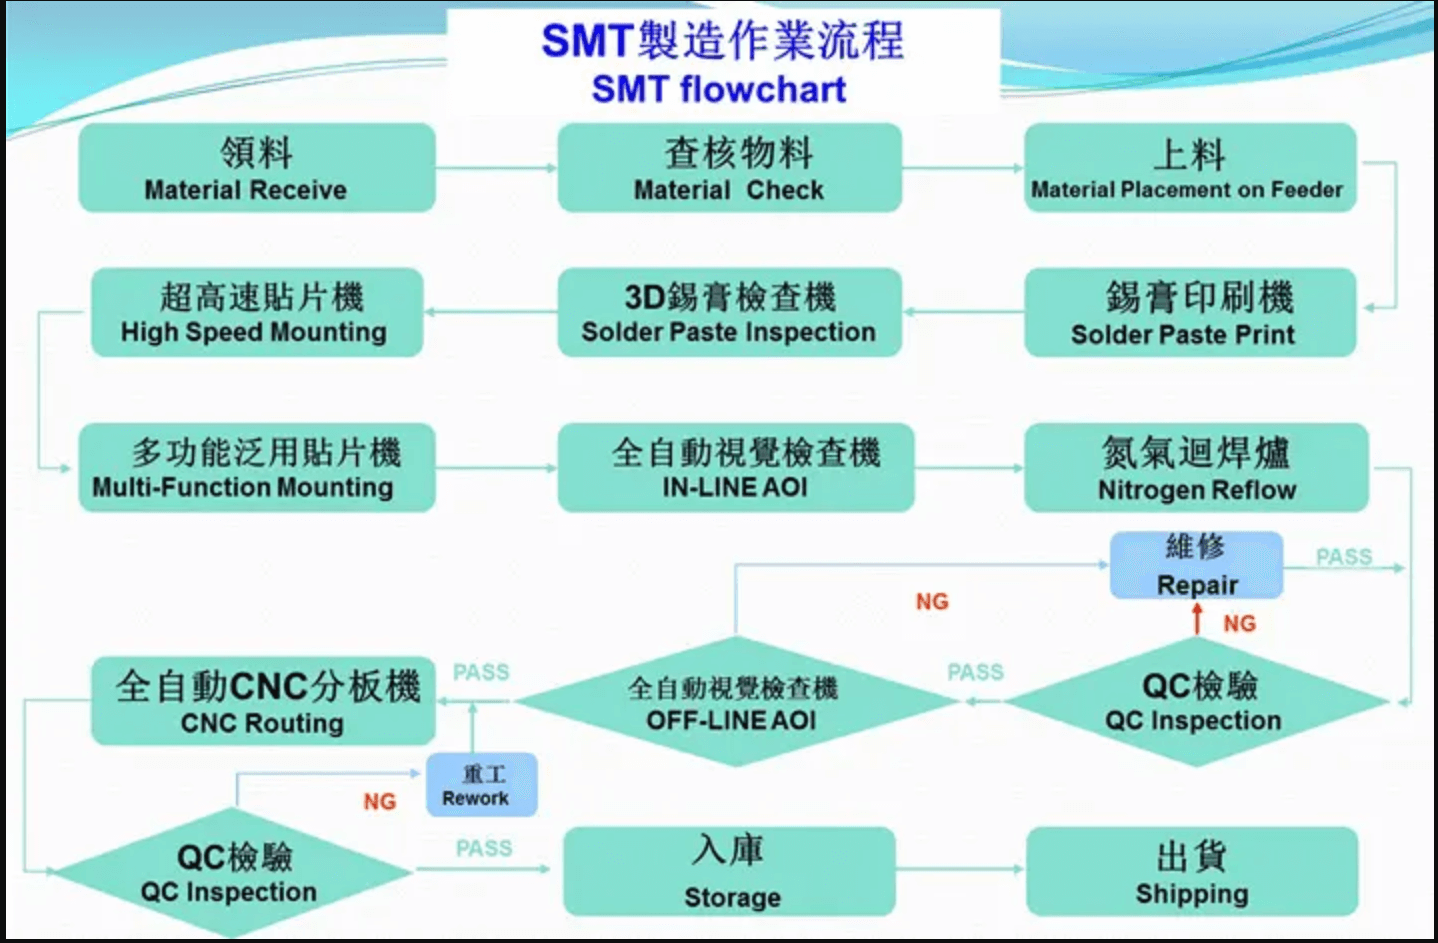 عملية إنتاج SMT